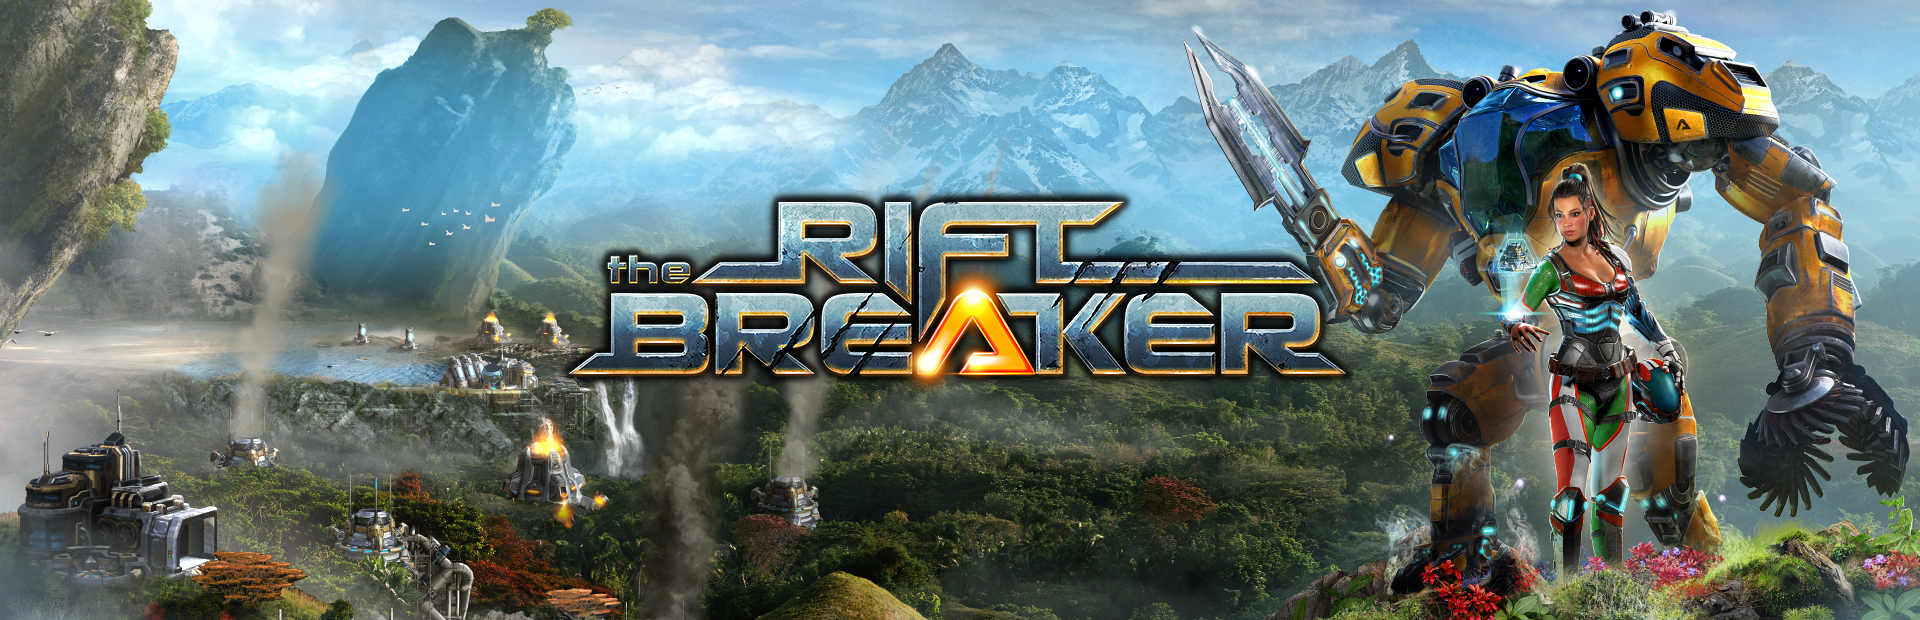 the riftbreaker roadmap